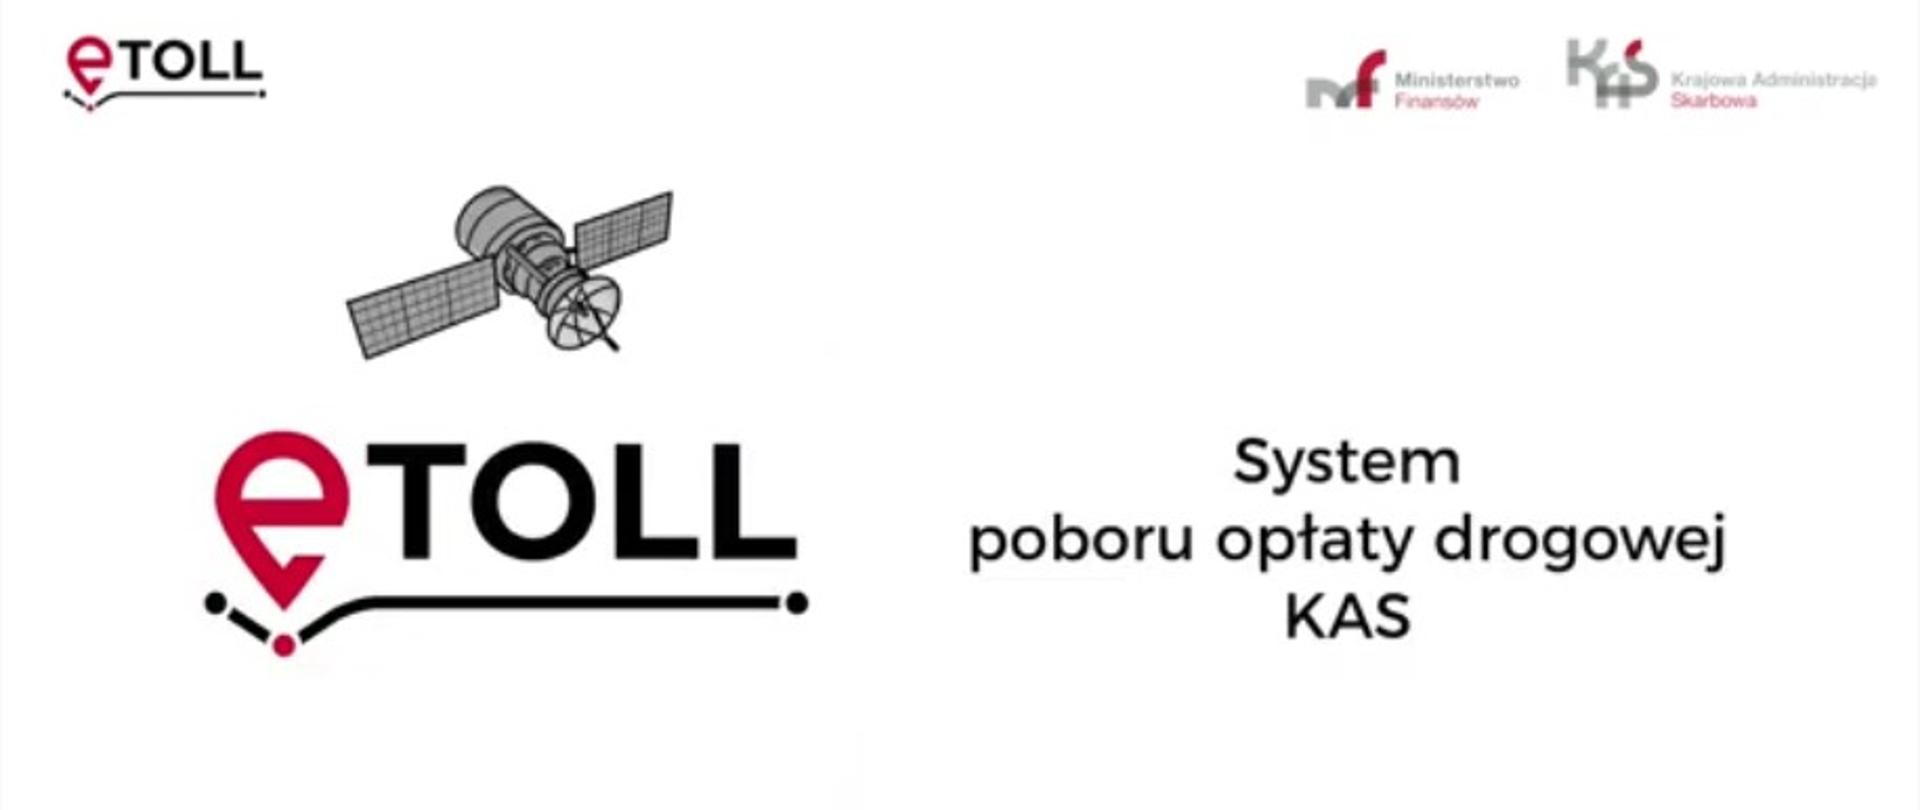 logo eTOLL, MF i KAS, satelita i napis eTOLL system poboru opłaty drogowej KAS